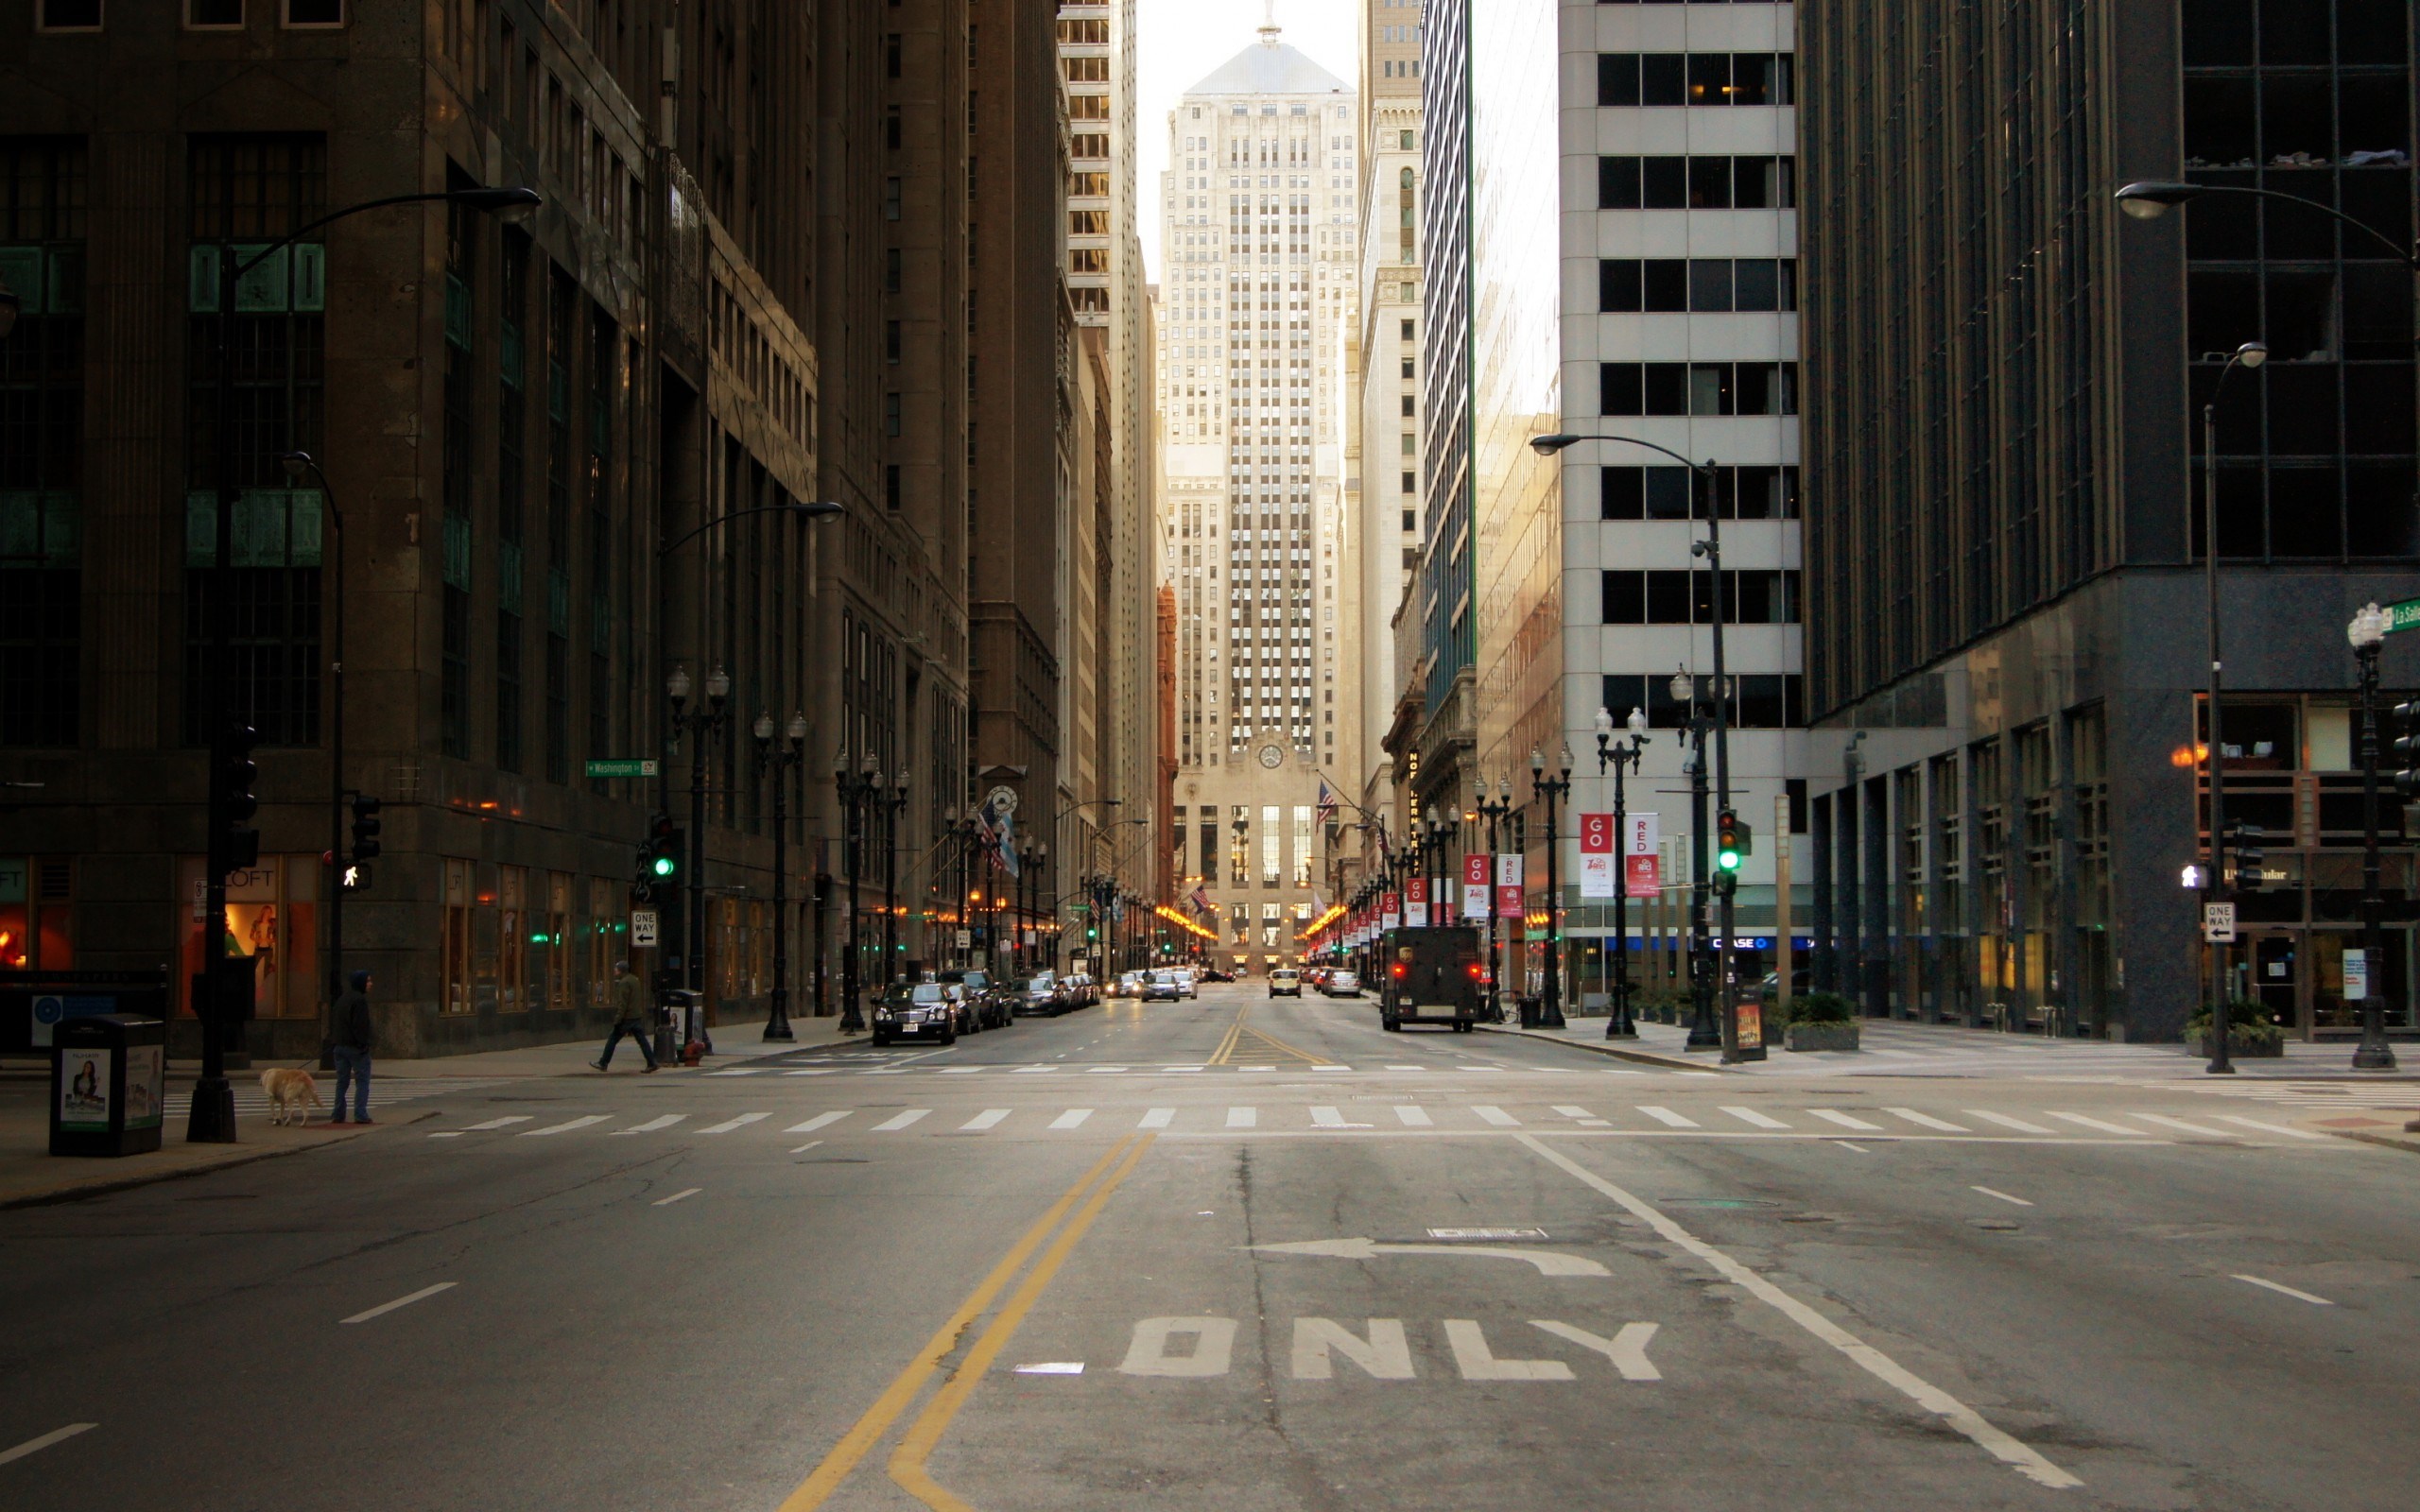 фото улицы города без людей